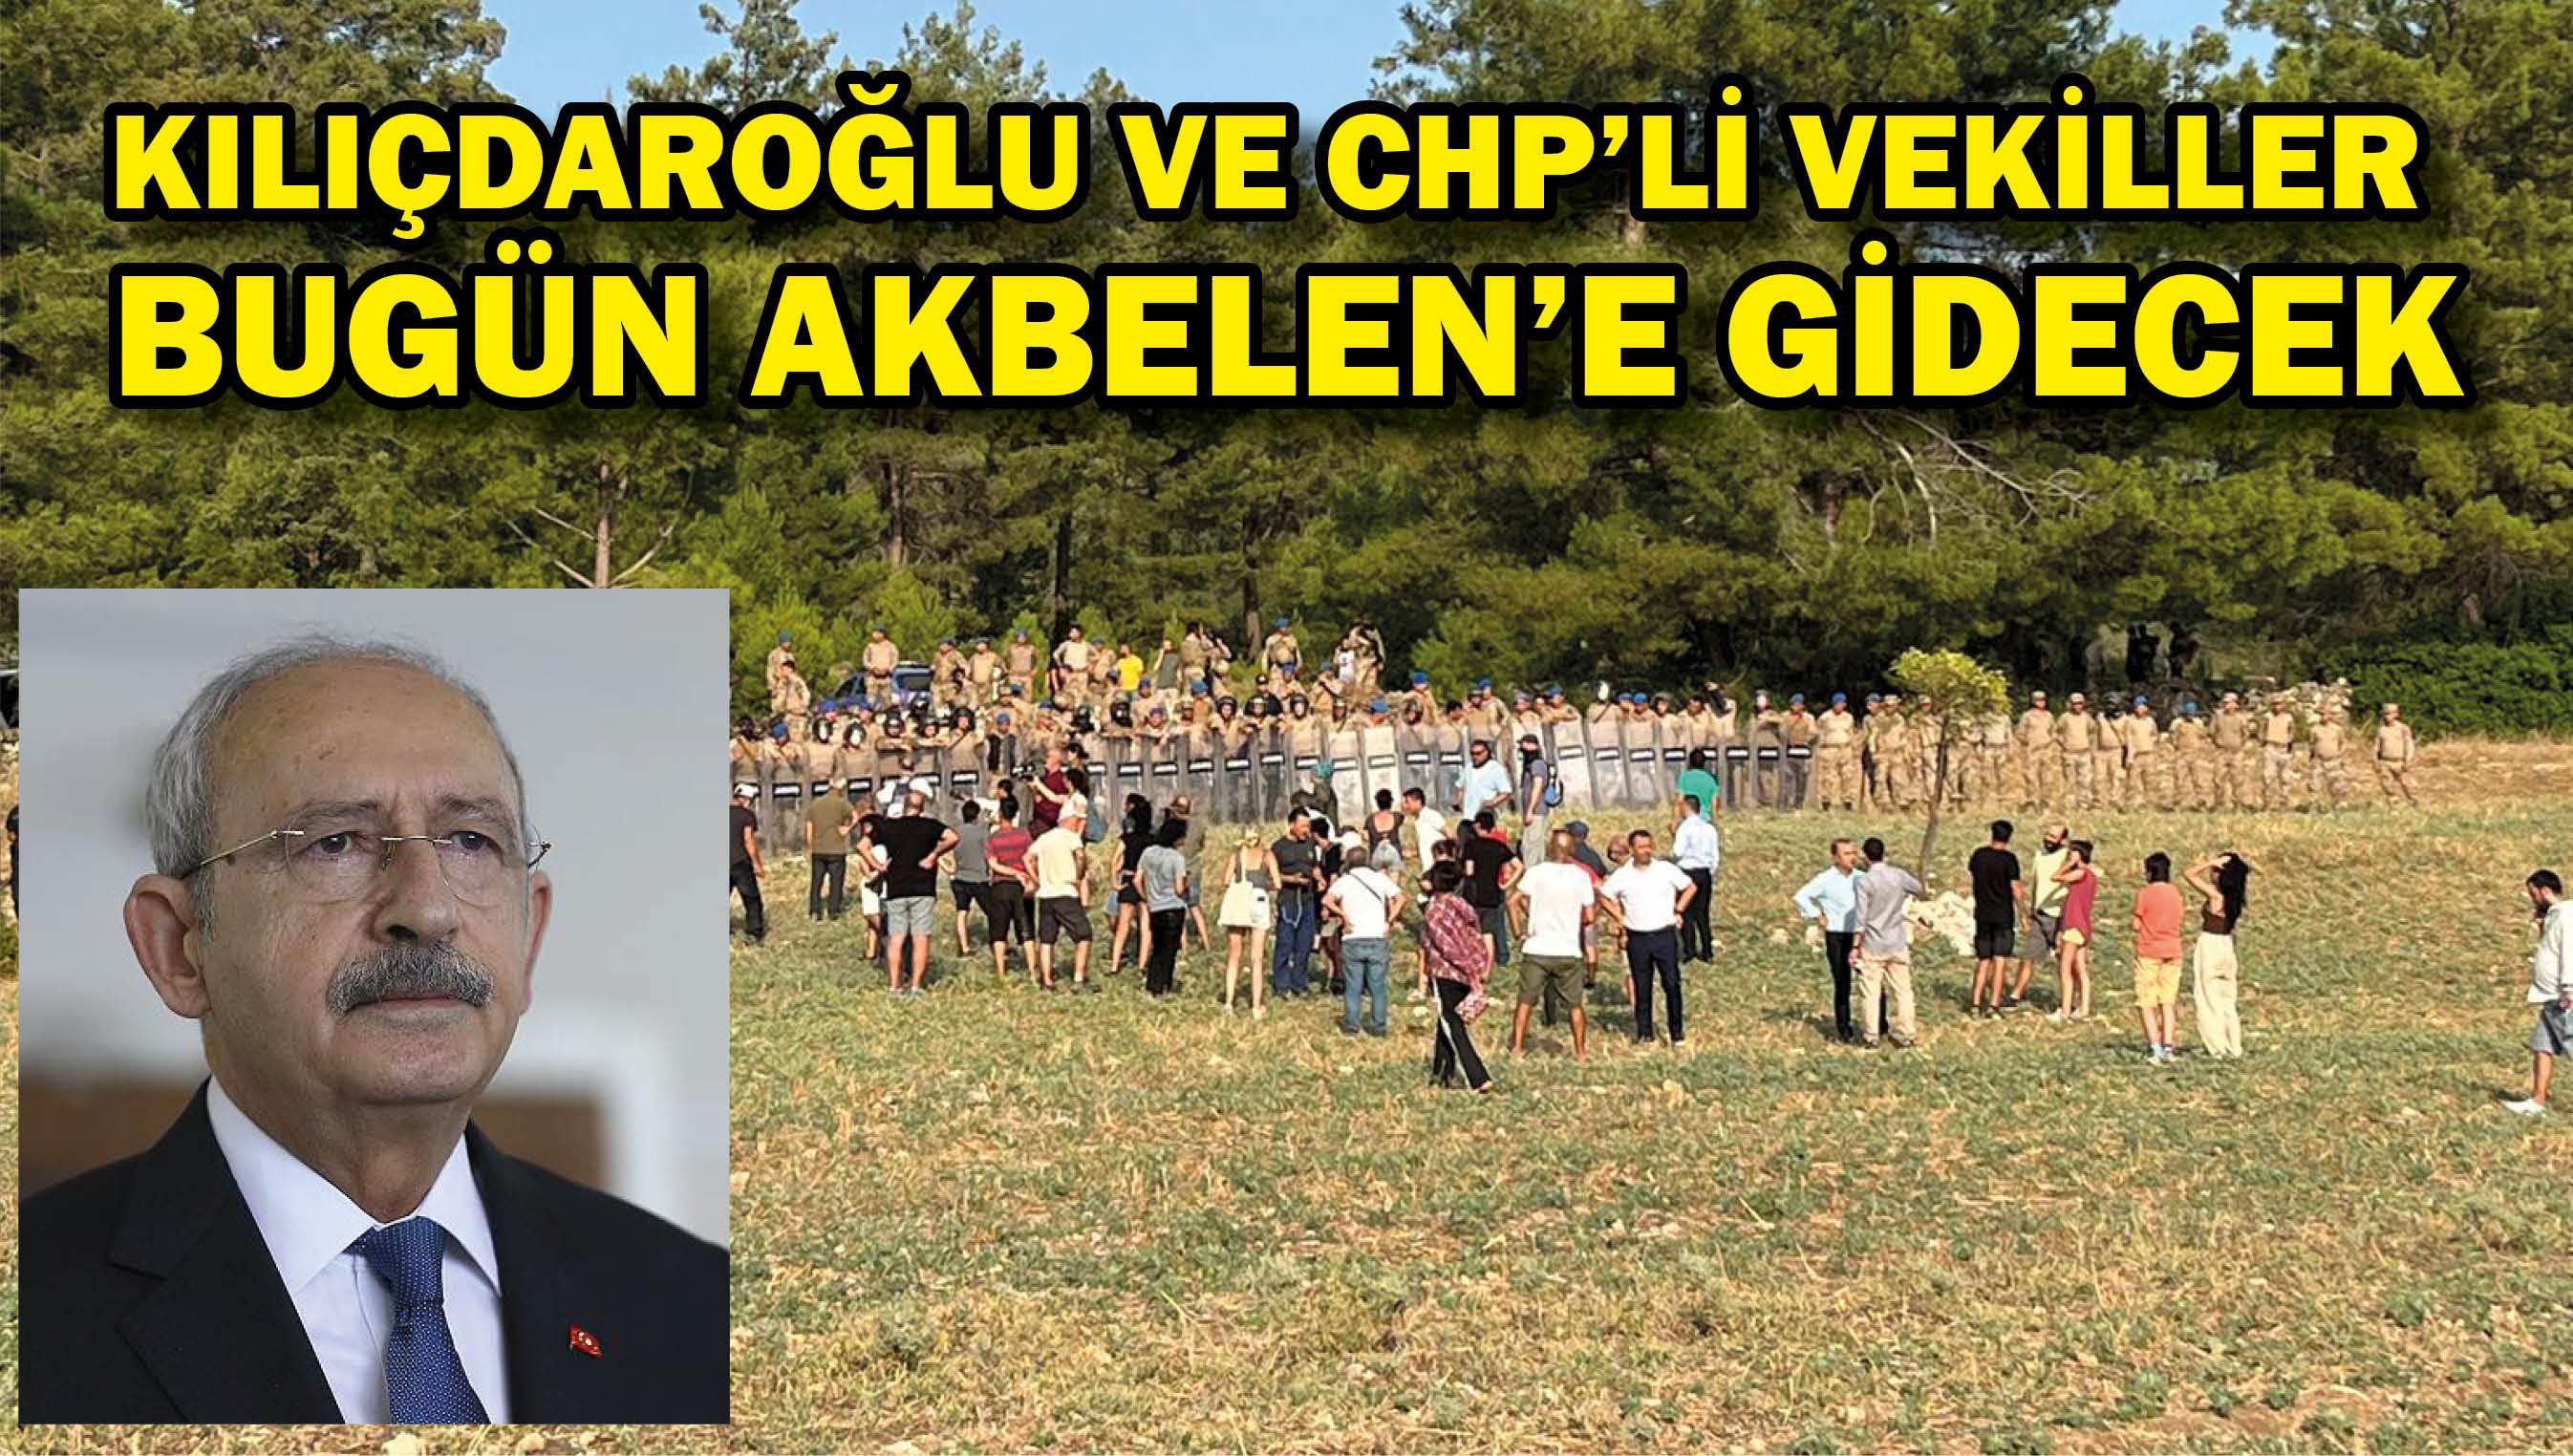 Kılıçdaroğlu ve CHP'li vekiller bugün Akbelen'e gidecek